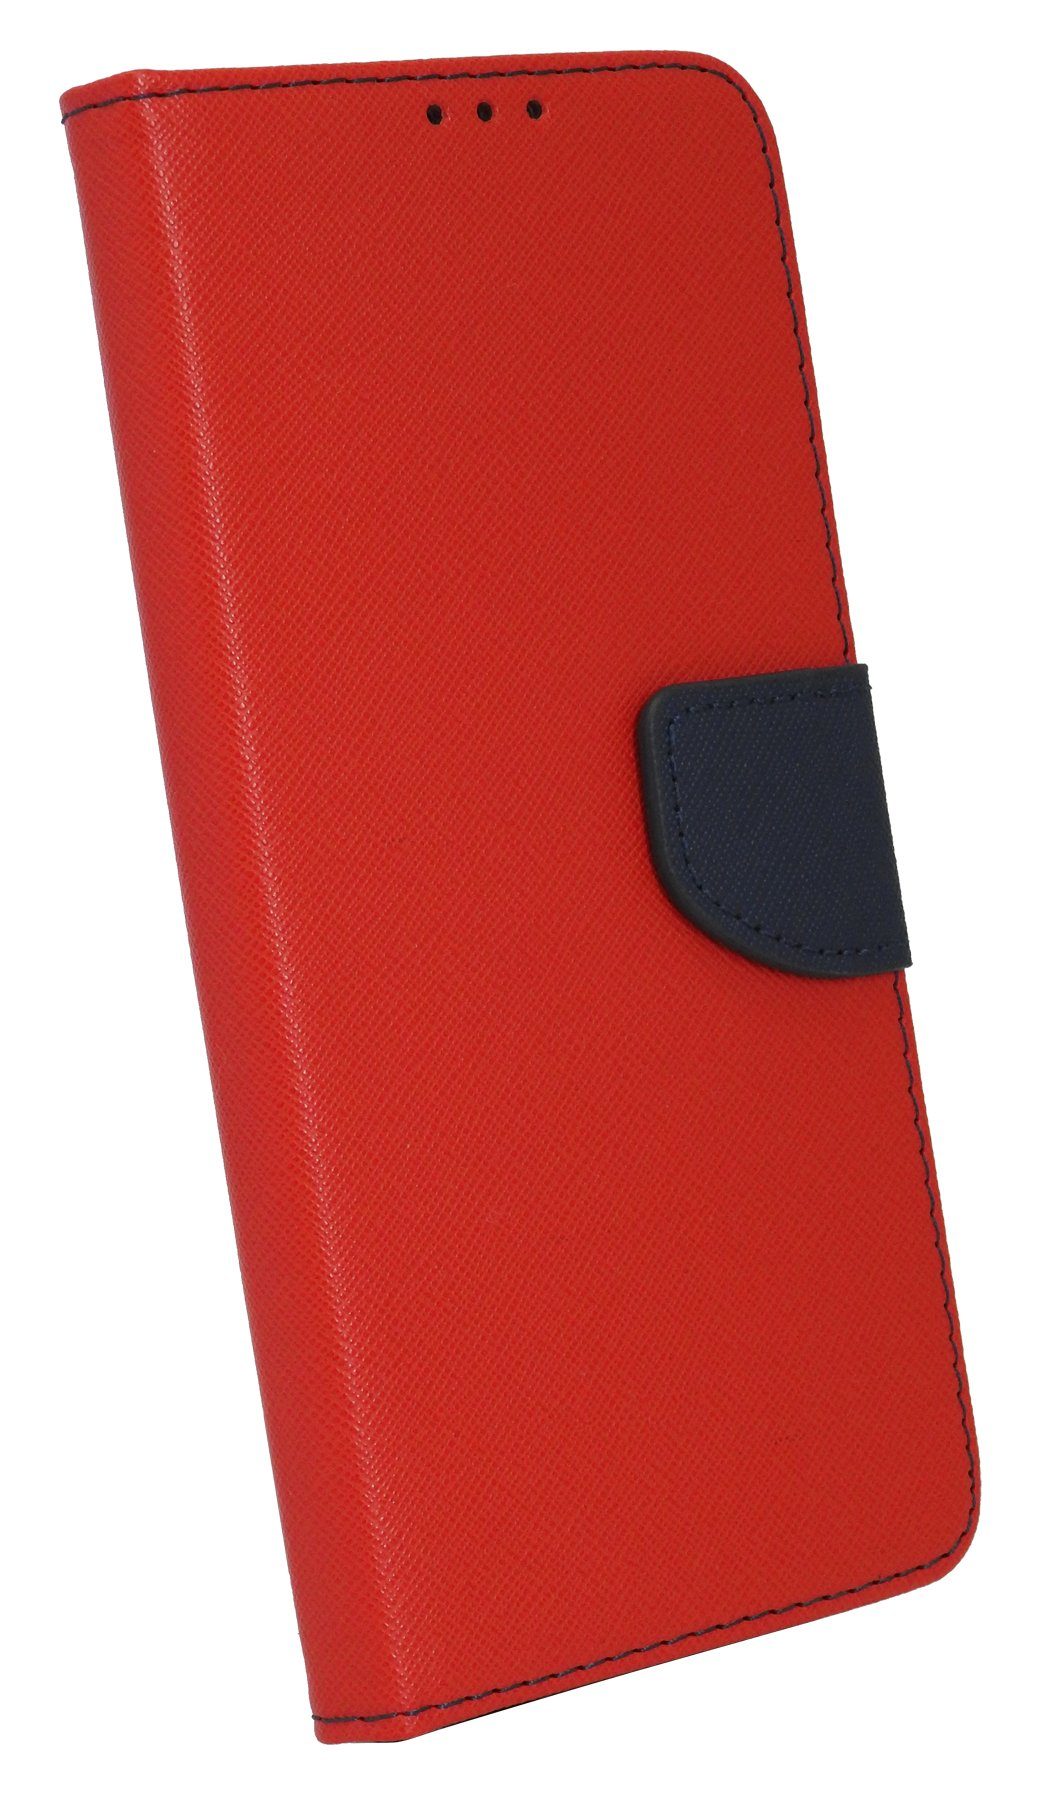 cofi1453 Smartphone-Hülle cofi1453® Buch Tasche "Fancy" für SAMSUNG GALAXY A52 (A525F) Handy Hülle Etui Brieftasche Schutzhülle mit Standfunktion, Kartenfach